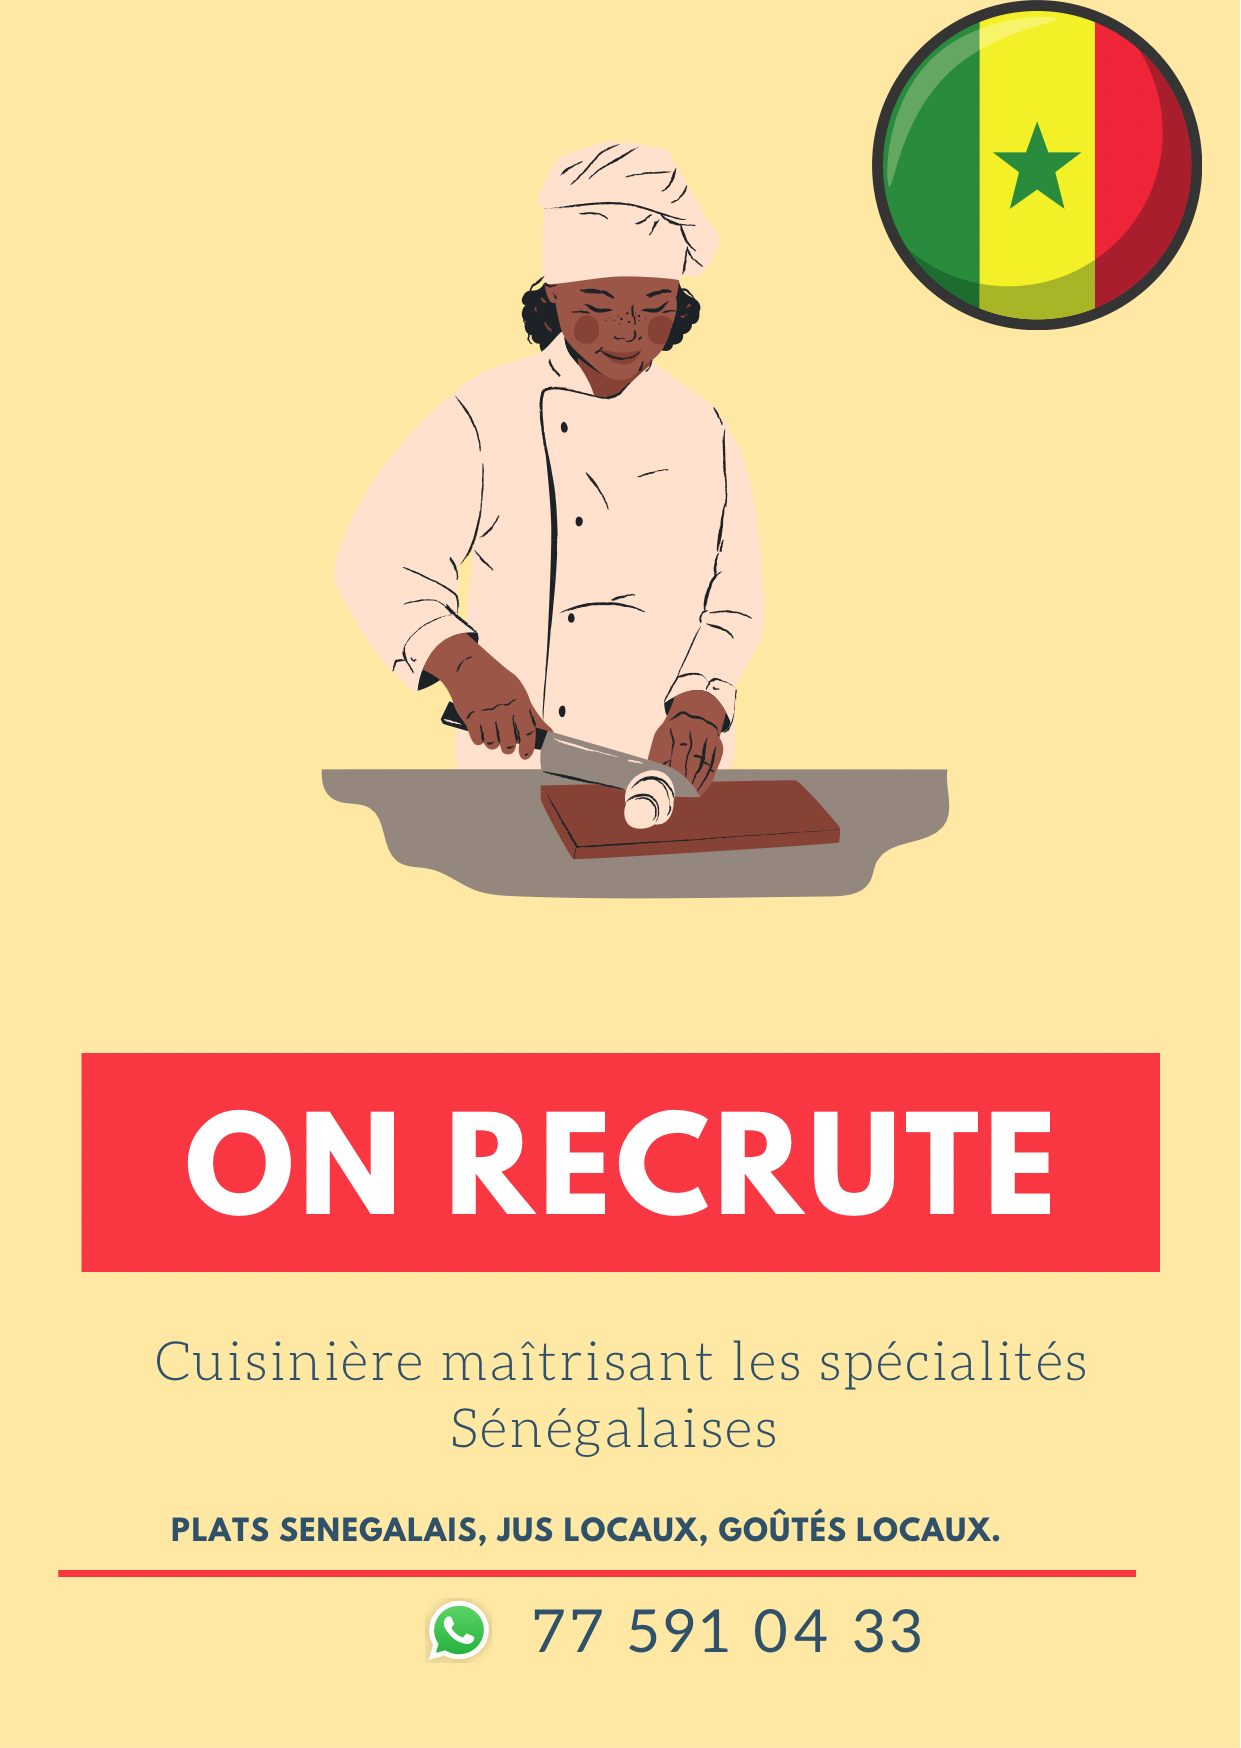 Recherche Une cuisinière spécialisée en cuisine sénégalaise avec de l’expérience dans le domaine  Nous recherchons une cuisinière ayant une maîtrise des spécialités sénégalaise. 
Avec de l’expérience dans le domaine.
Les qualités requises sont la propreté, la maîtrise en gestion des stocks, la ponctualité et la rigueur dans le travail.